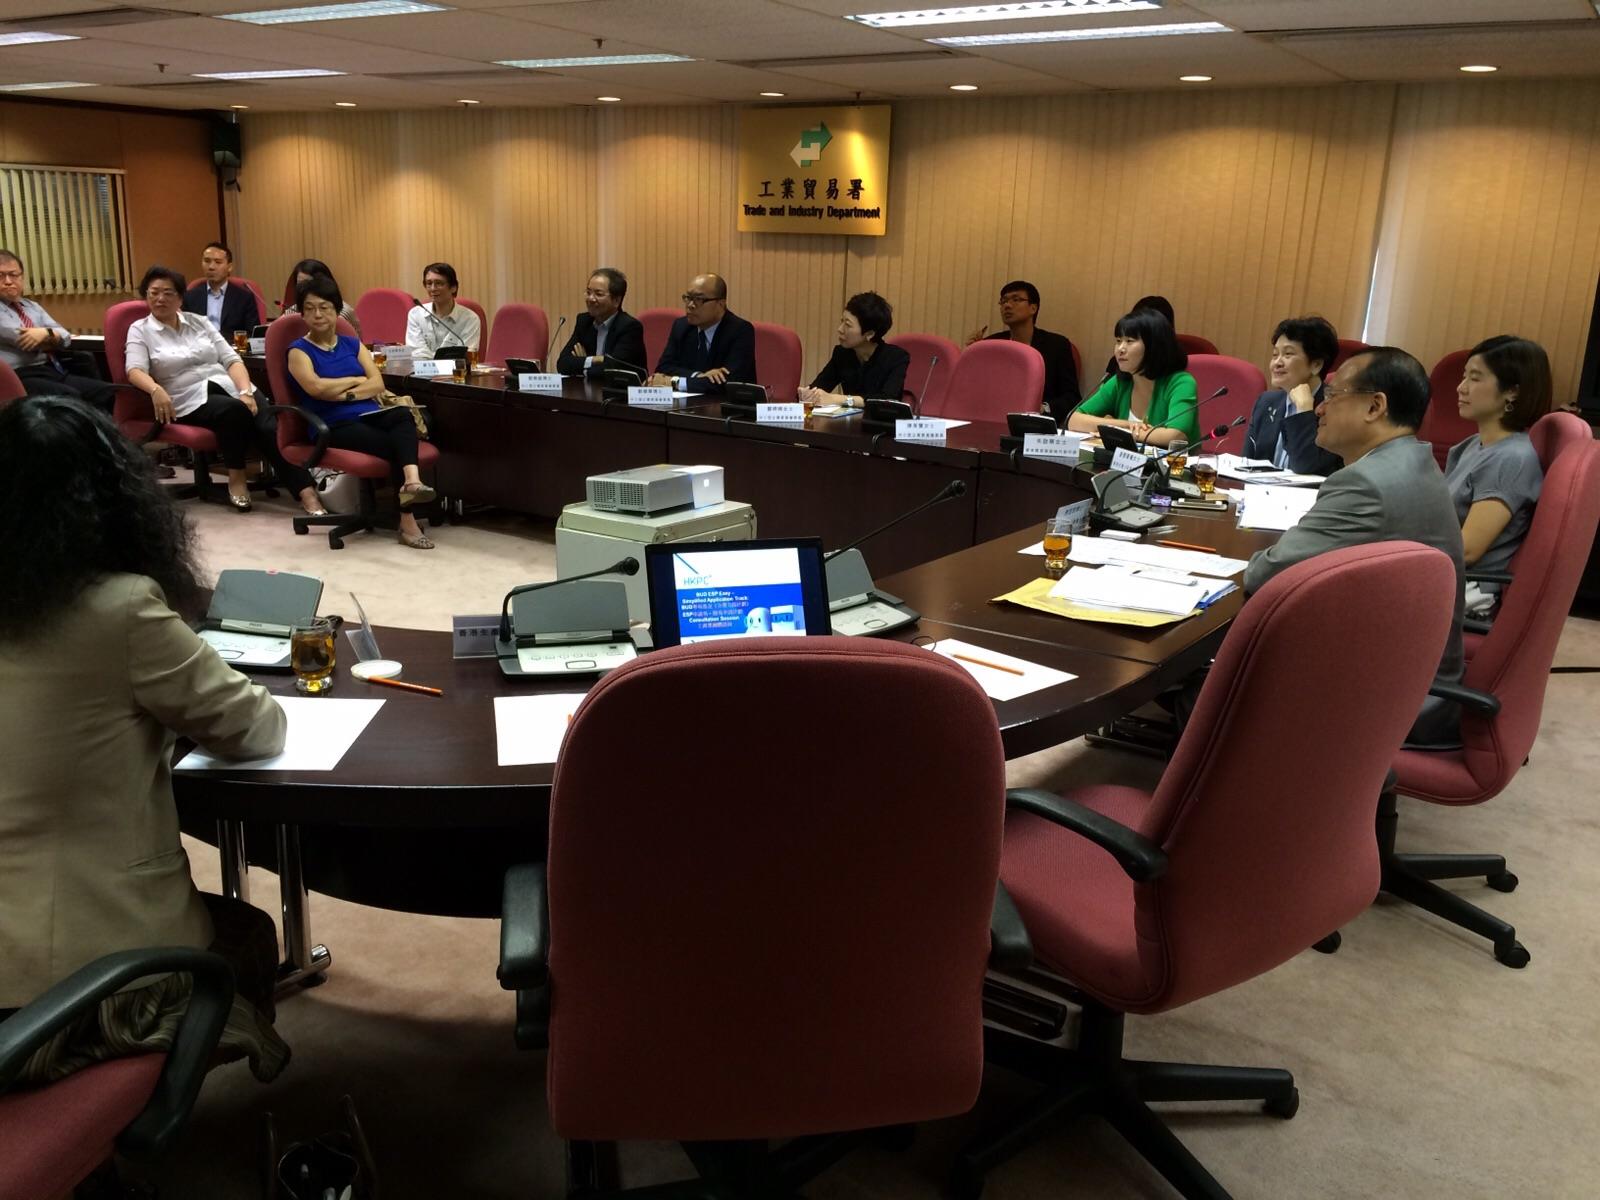 图   片   12 : 中   小   型   企   业   委   员   会   于   2015 年   7 月   16 日   与   中   小   企   业   组   织   代   表   会   面   ，   就   「   香   港   中   小   企   业   在   发   展   电   子   商   贸   及   资   讯   科   技   在   应   用   上   所   需   的   支   援   」   交   流   意   见   。    中   小   型   企   业   委   员   会   其   后   把   会   面   的   意   见   撮   要   提   交   与   政   府   有   关   部   门   参   考   。   